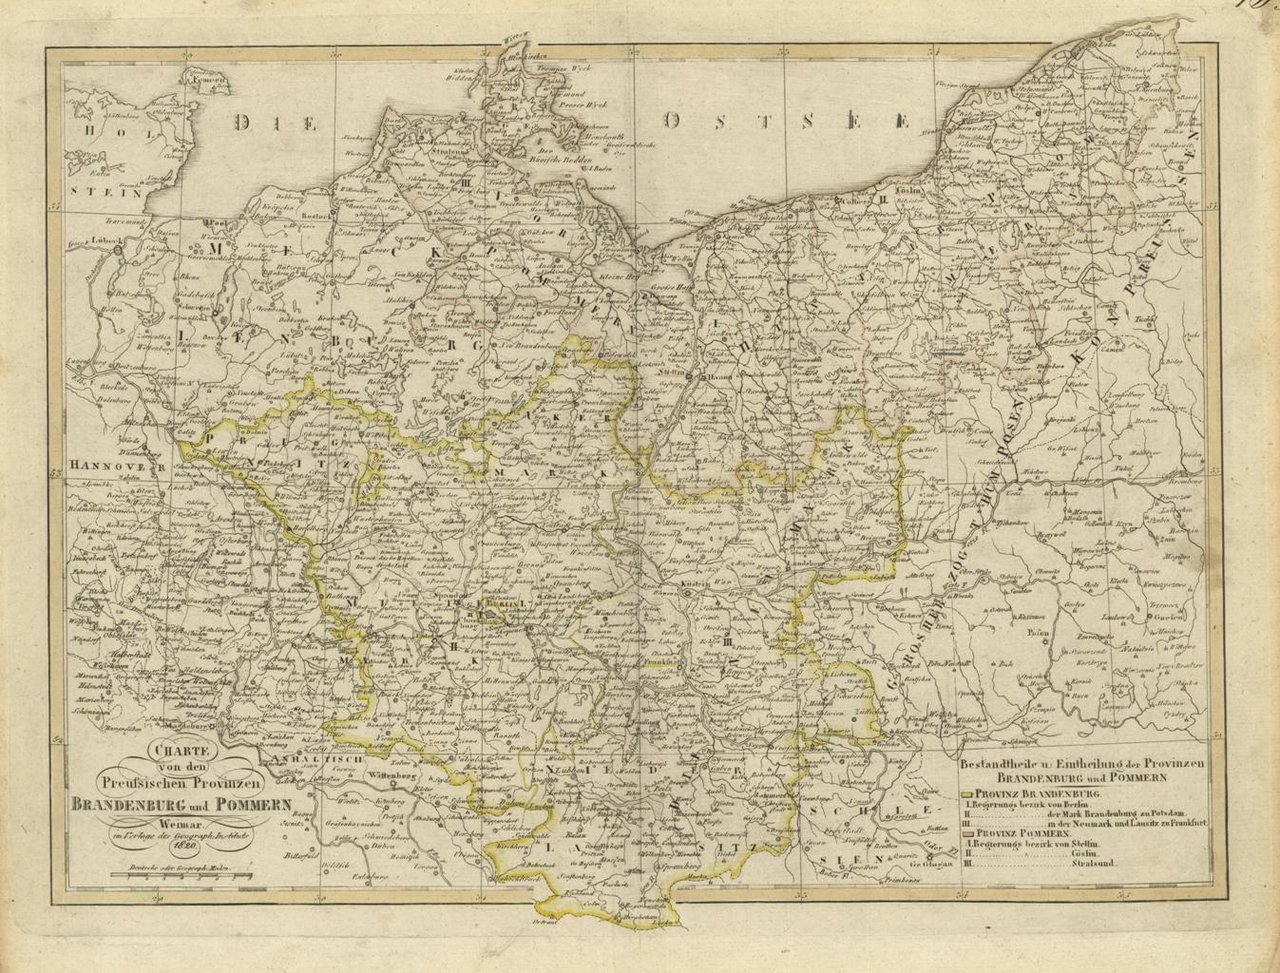 Charte von den Preussischen Provinzen Brandenburg und Pommern